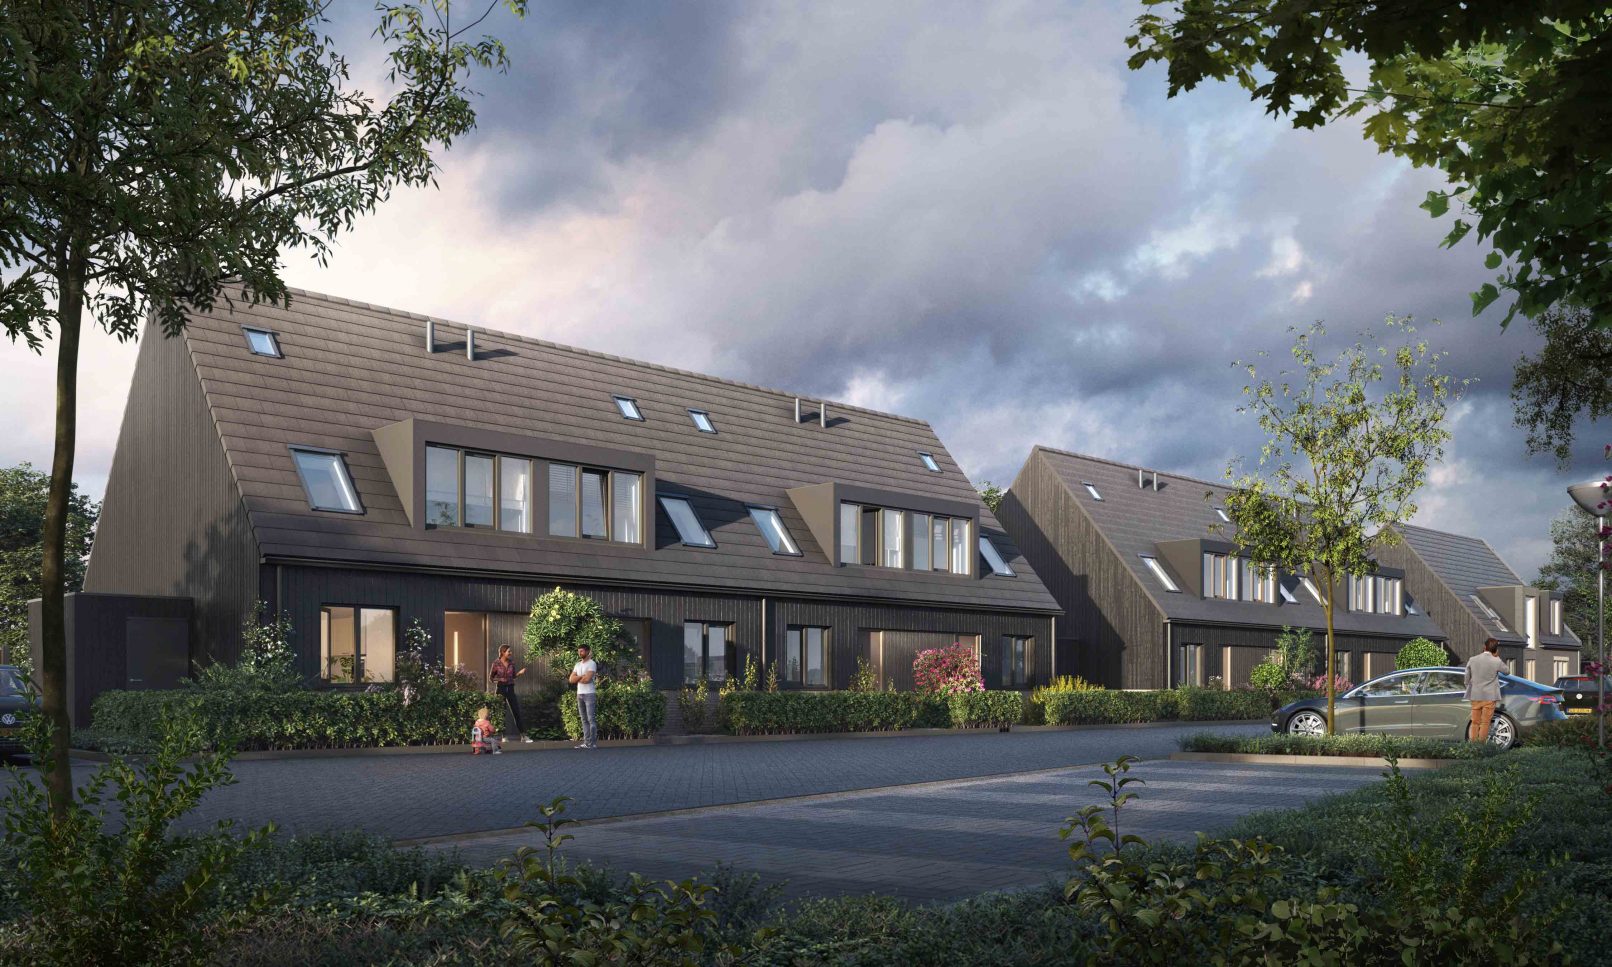 ENZO architectuur N interieur - Haarlemmermeer - Silo - Burgerveen - nieuwbouw - zakelijk - woonwijk -Kasteelhoeve - Nederhorst den Berg